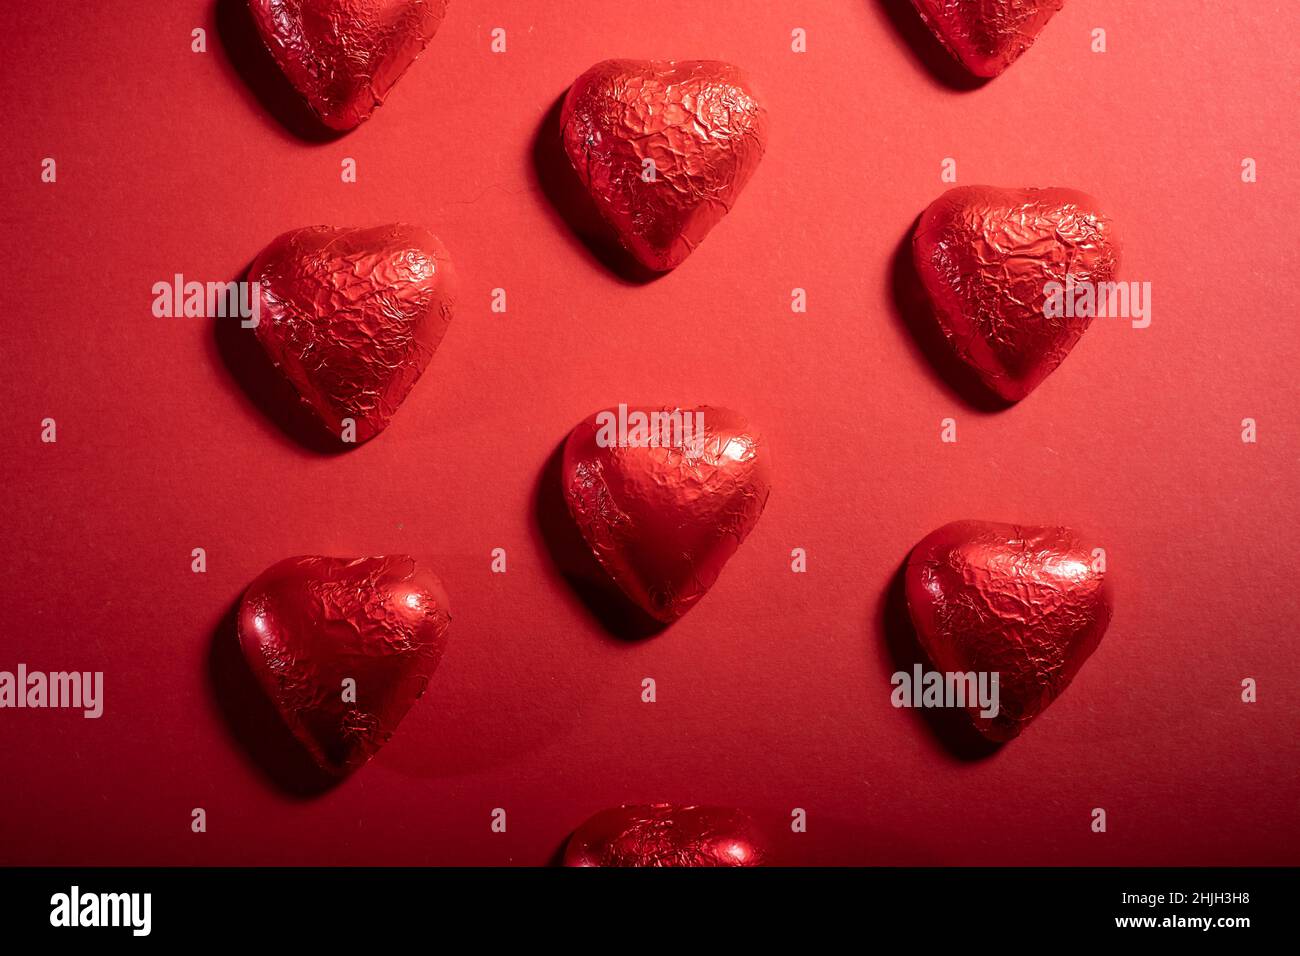 Helsinki / Finlande - 29 JANVIER 2022 : gros plan des confiseries au chocolat en forme de cœur et des roses rouges sur fond rouge vif. Banque D'Images